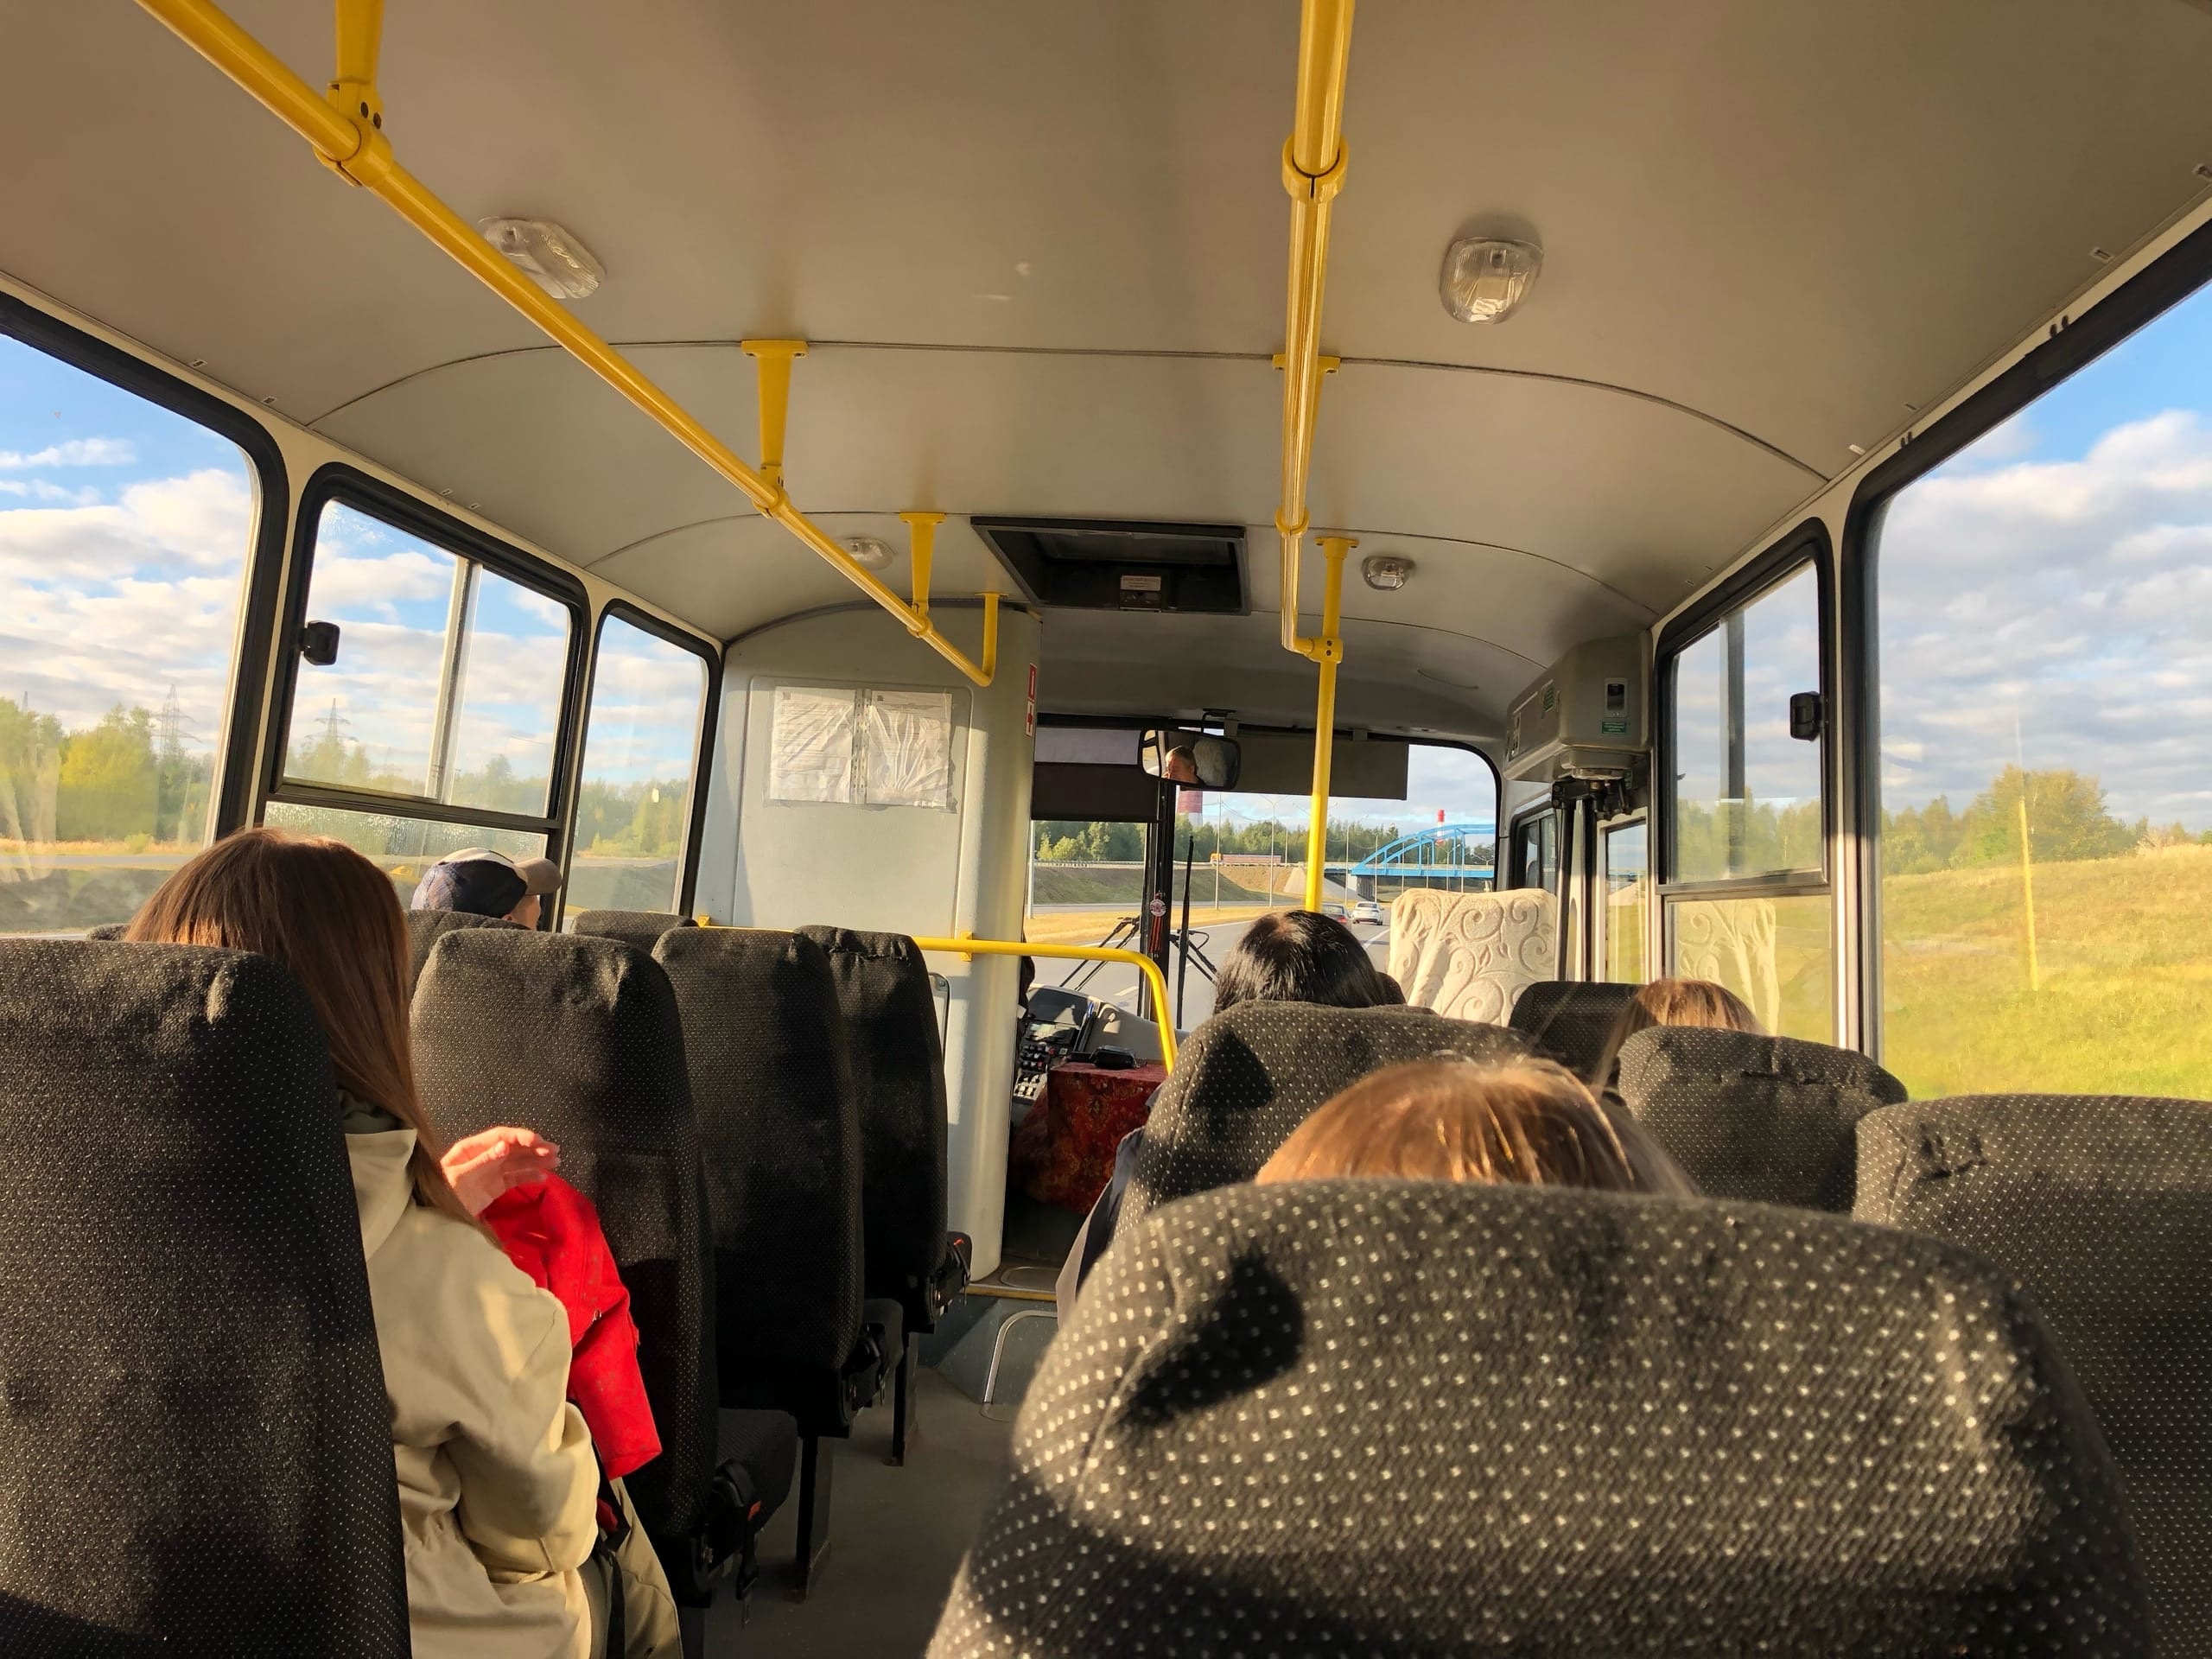  "Ждем целый час": жители Ярославля просят губернатора о новым автобусном маршруте